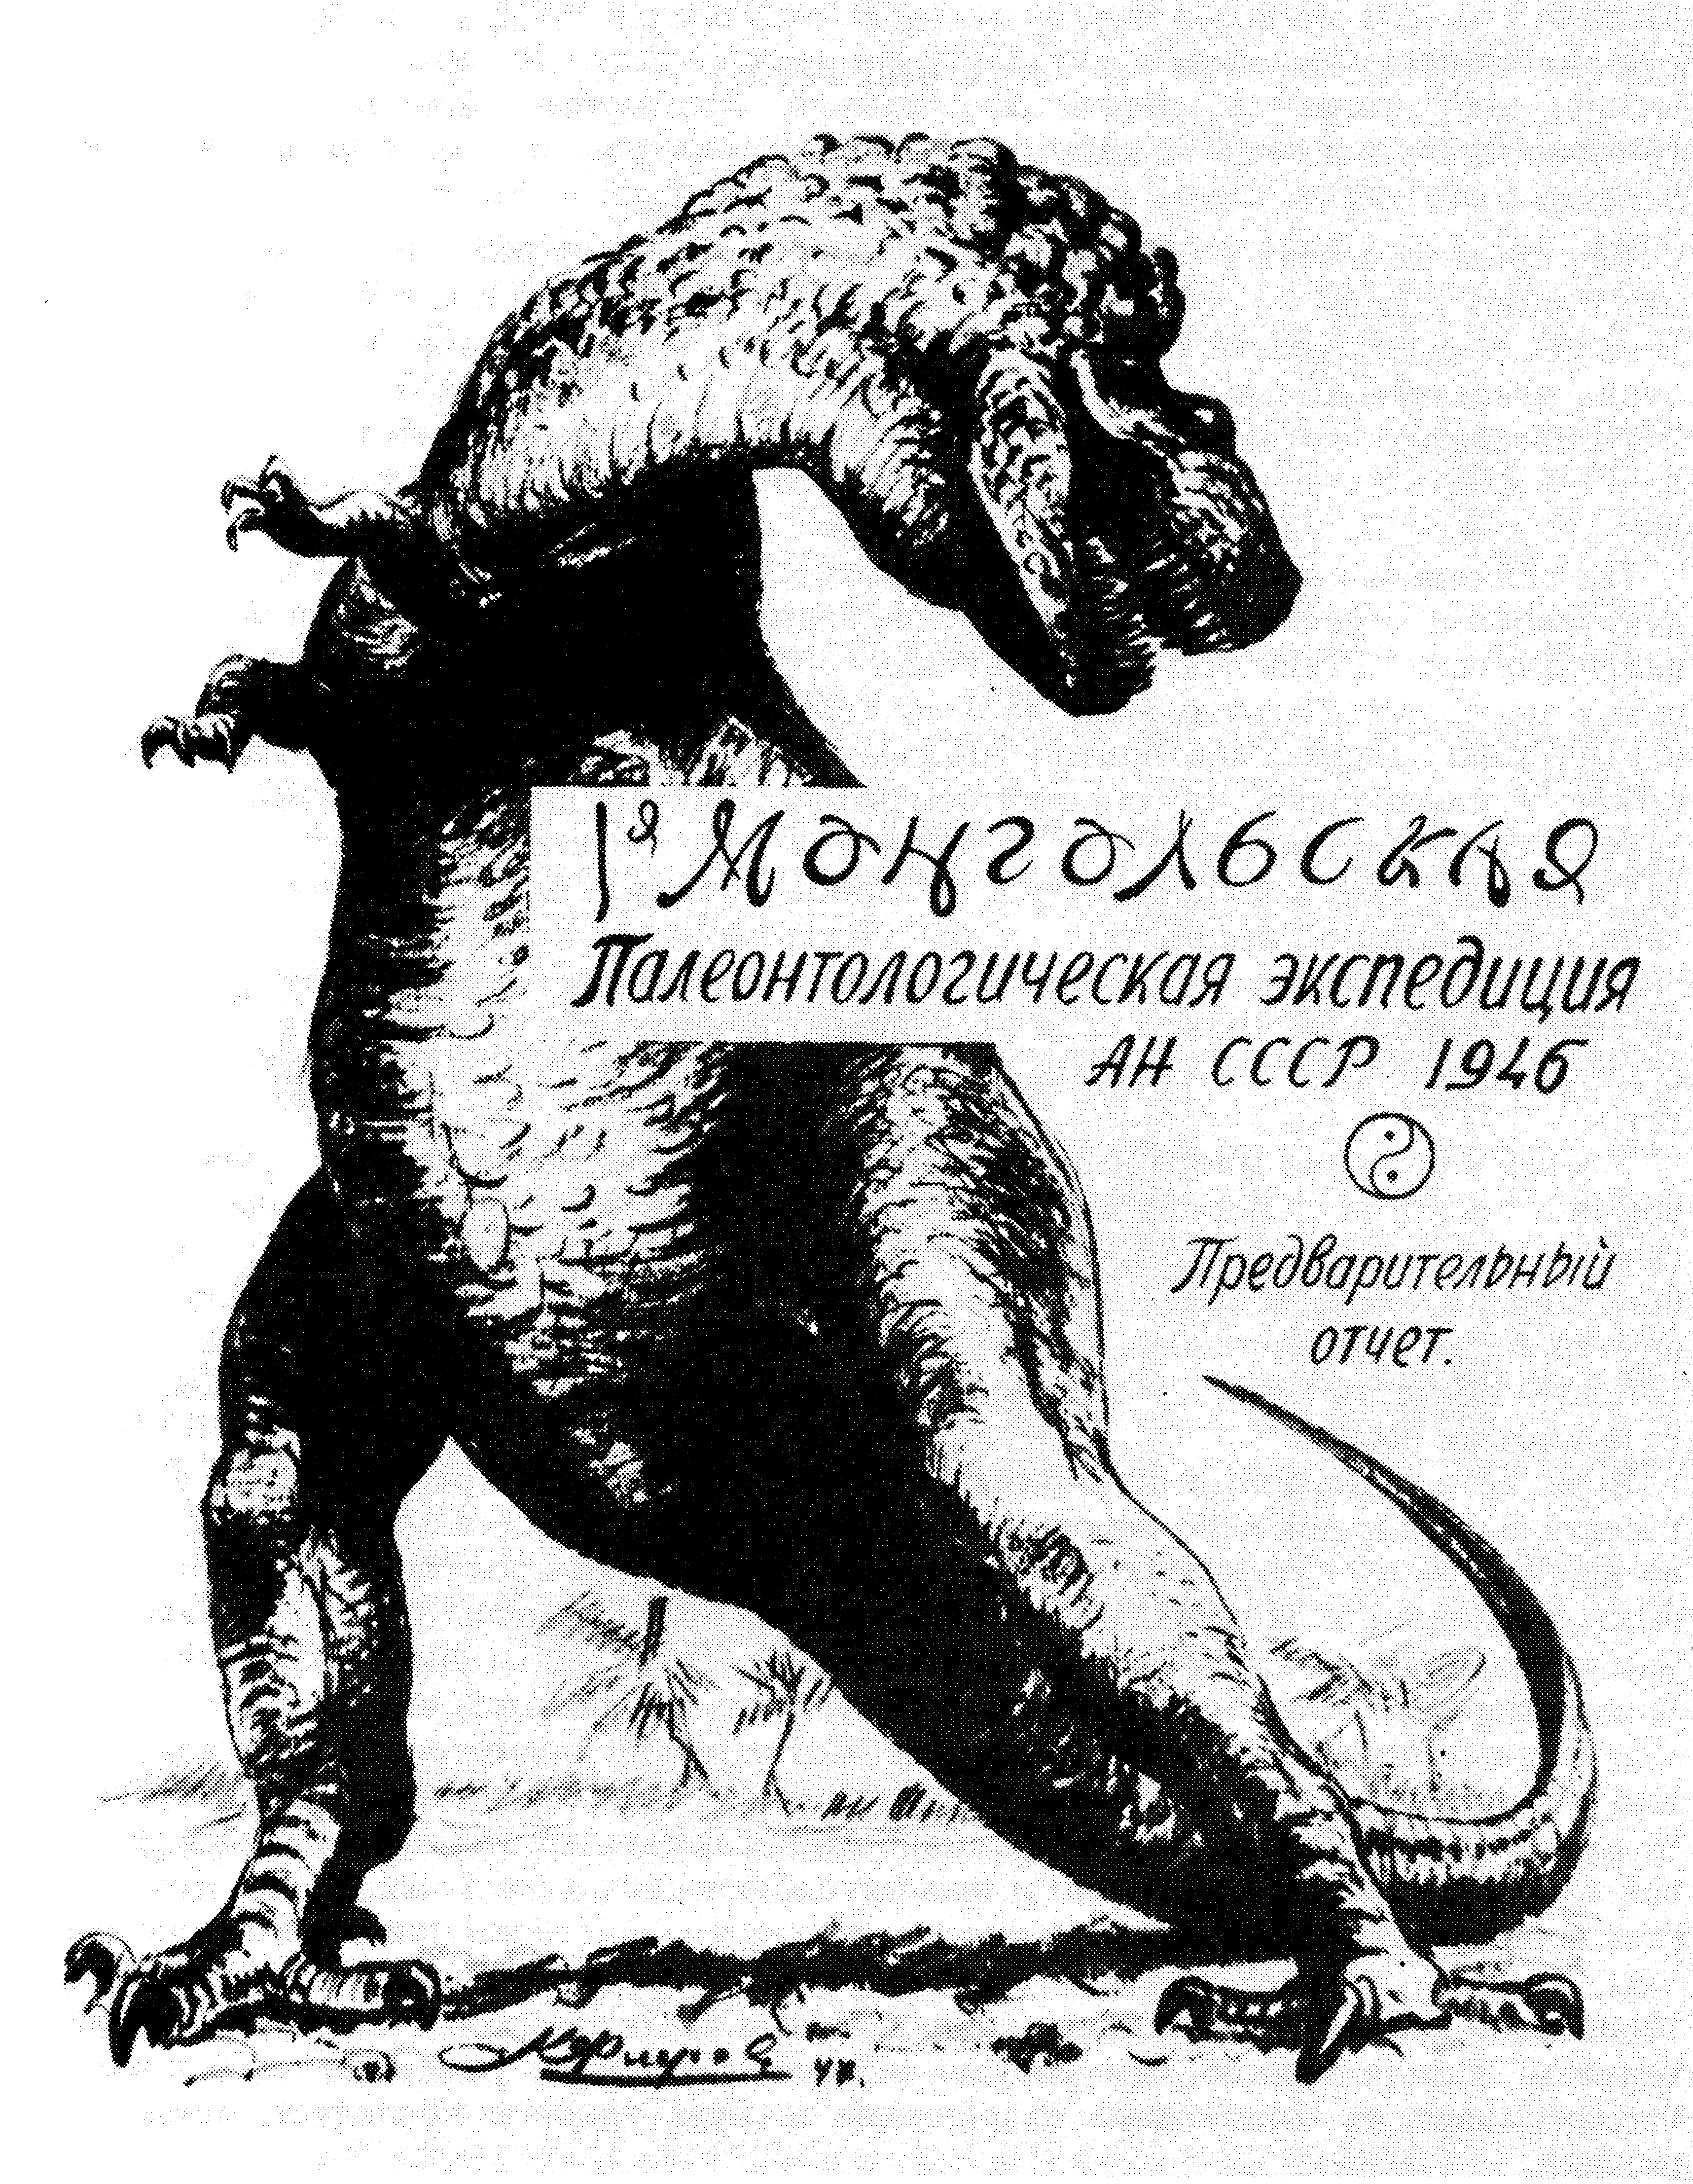 Обложка отчета Монгольской палеонтологической экспедиции (1946 г.). Рис. К.К. Флерова